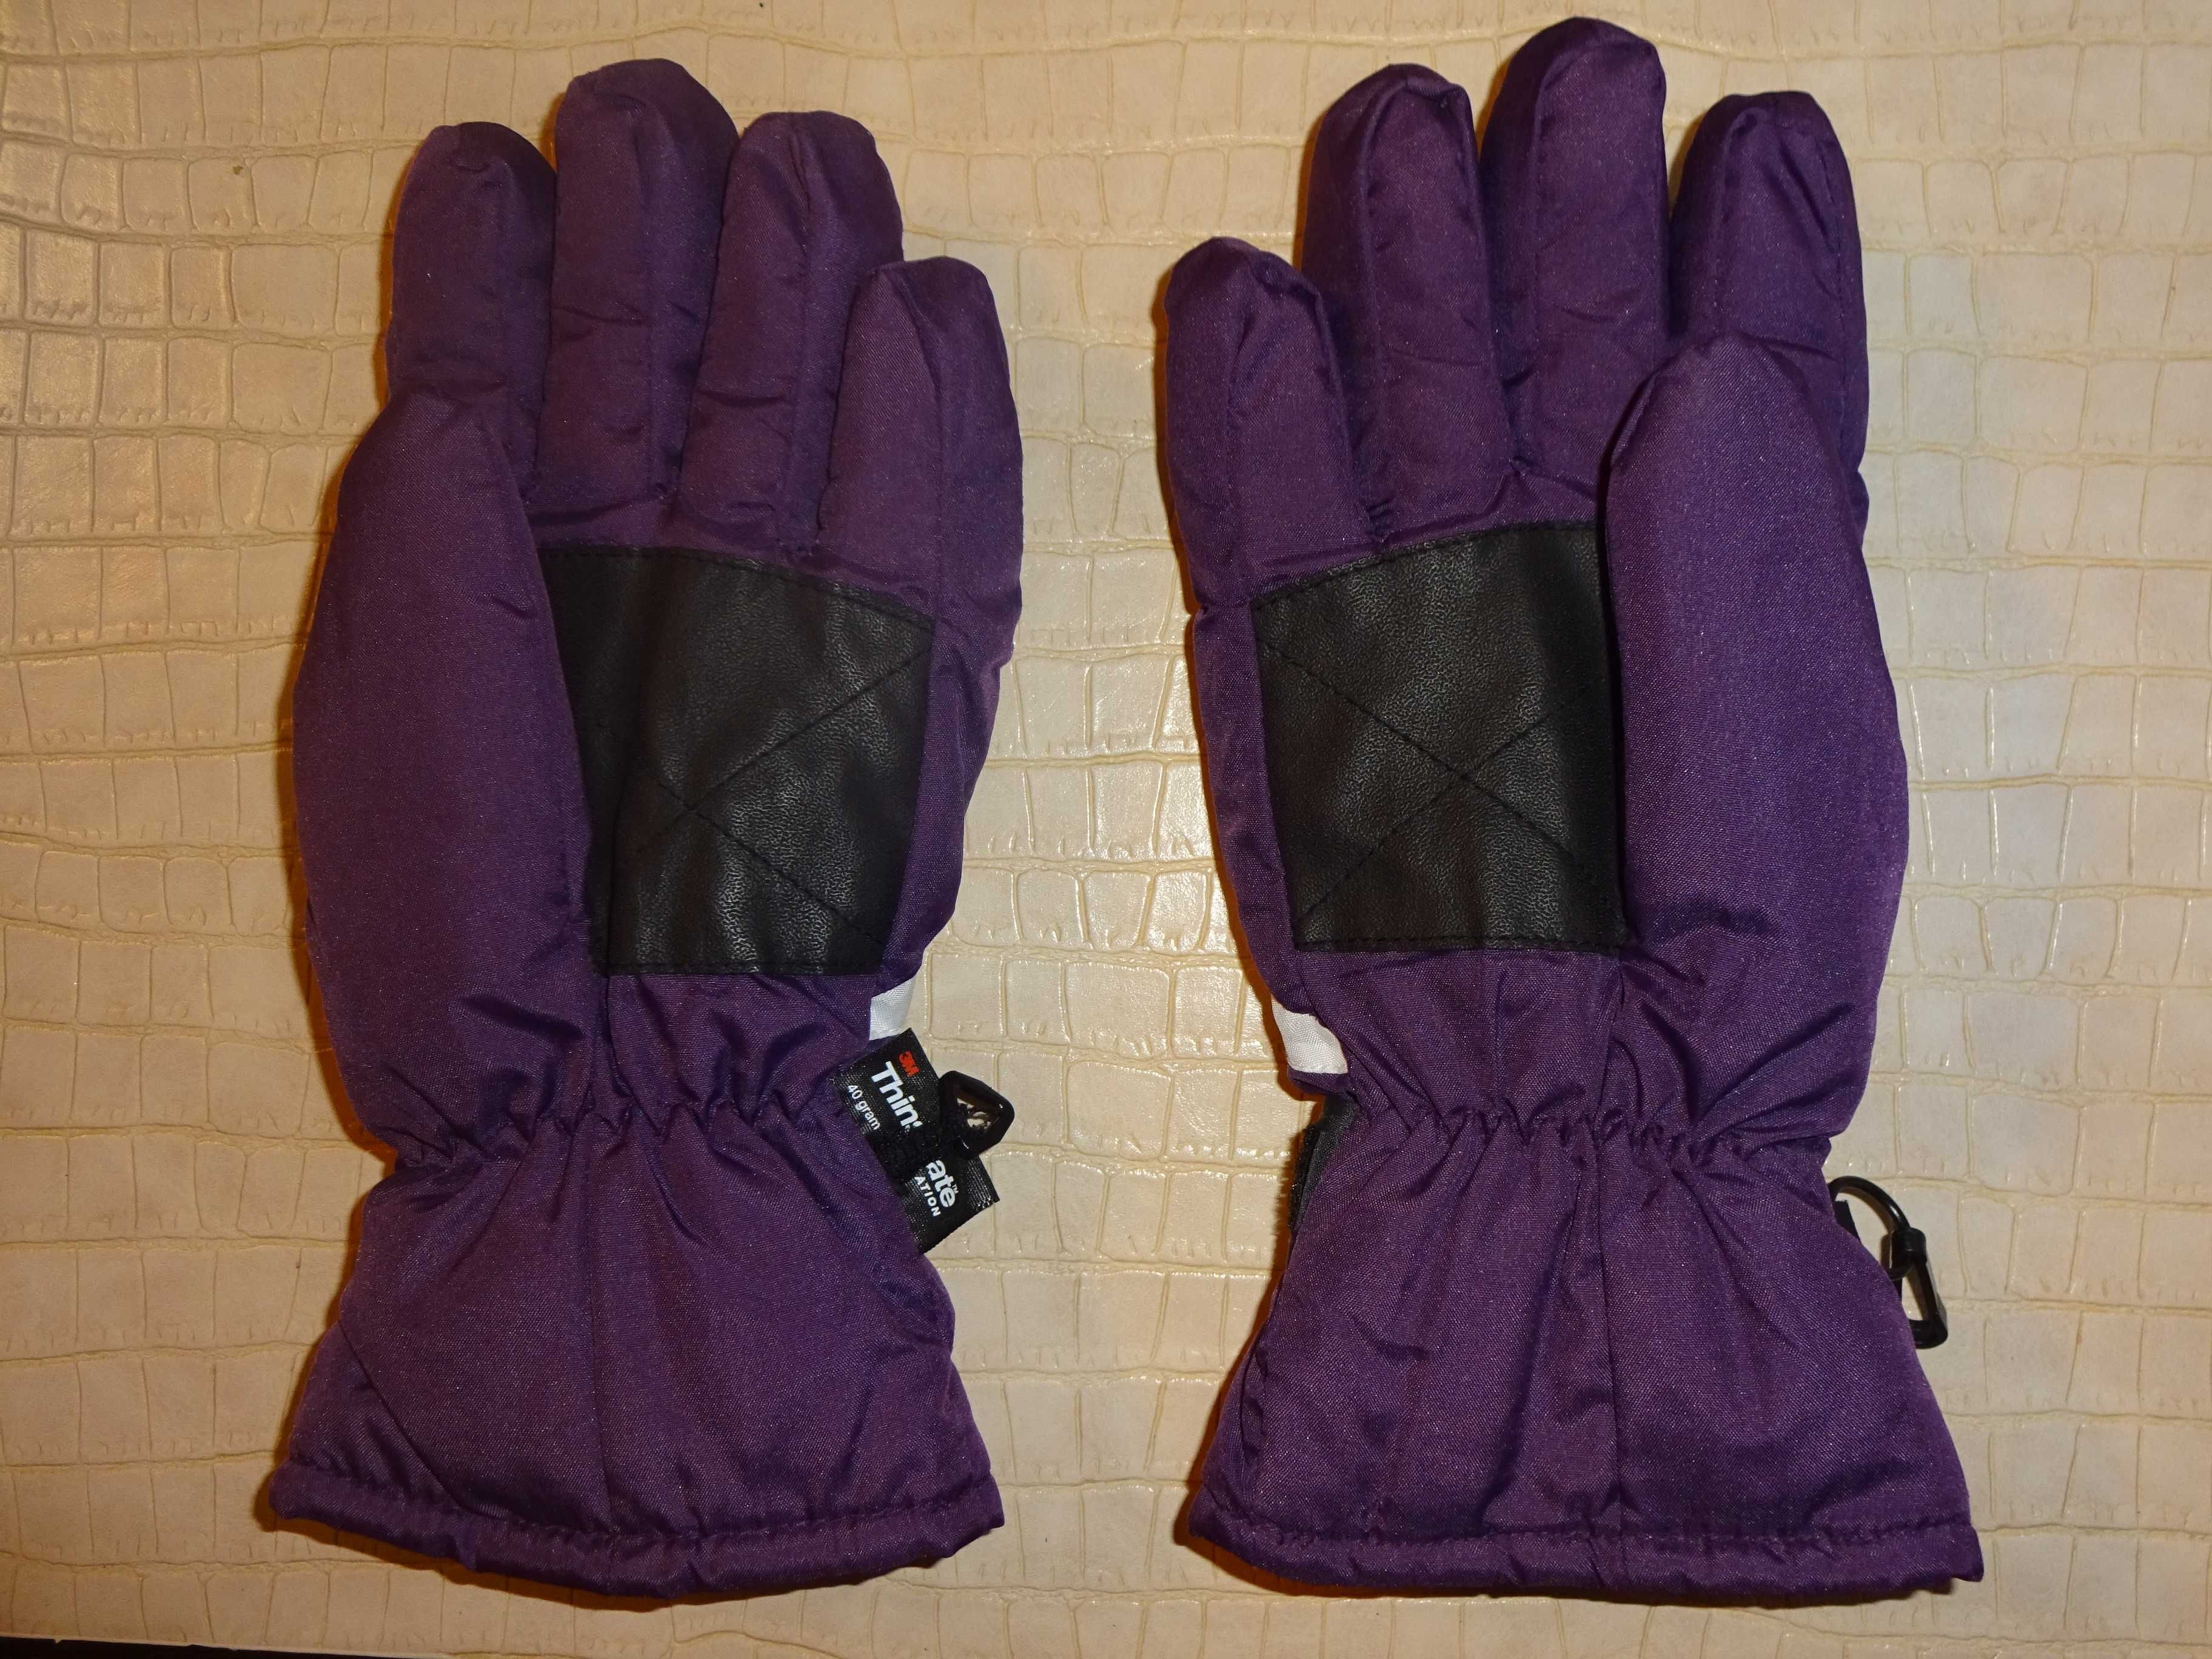 CRIVIT Thinsulate ciepłe fioletowe rękawice narciarskie 6,5 / 10-12 l.